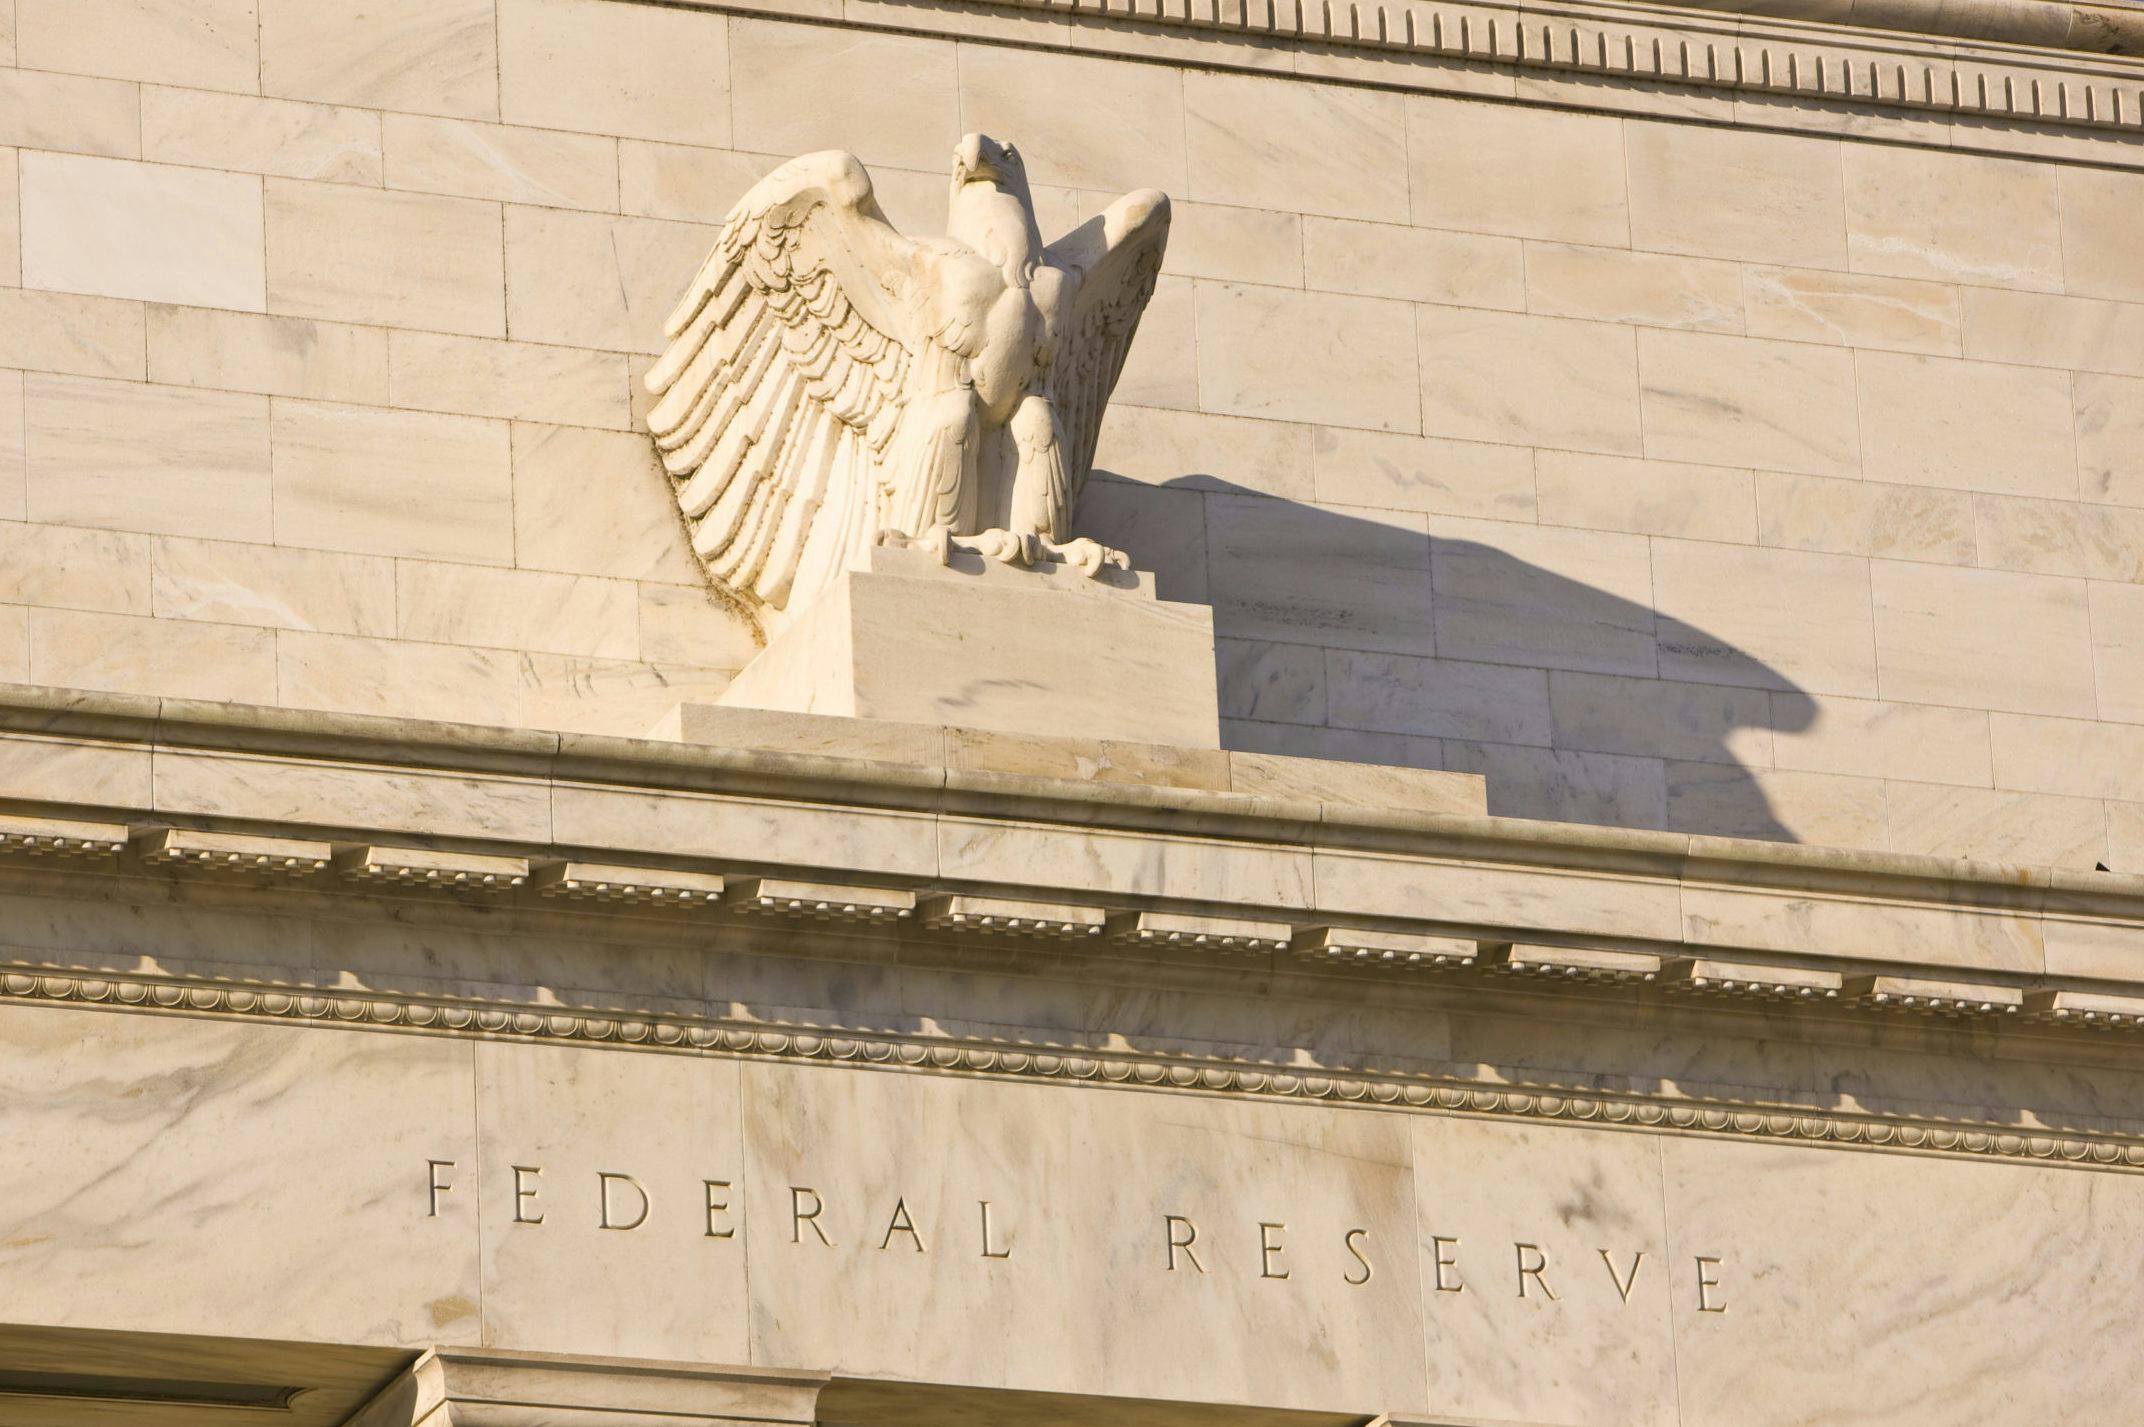 Federal Reserve versnelt afbouwen coronasteun om hoge inflatie